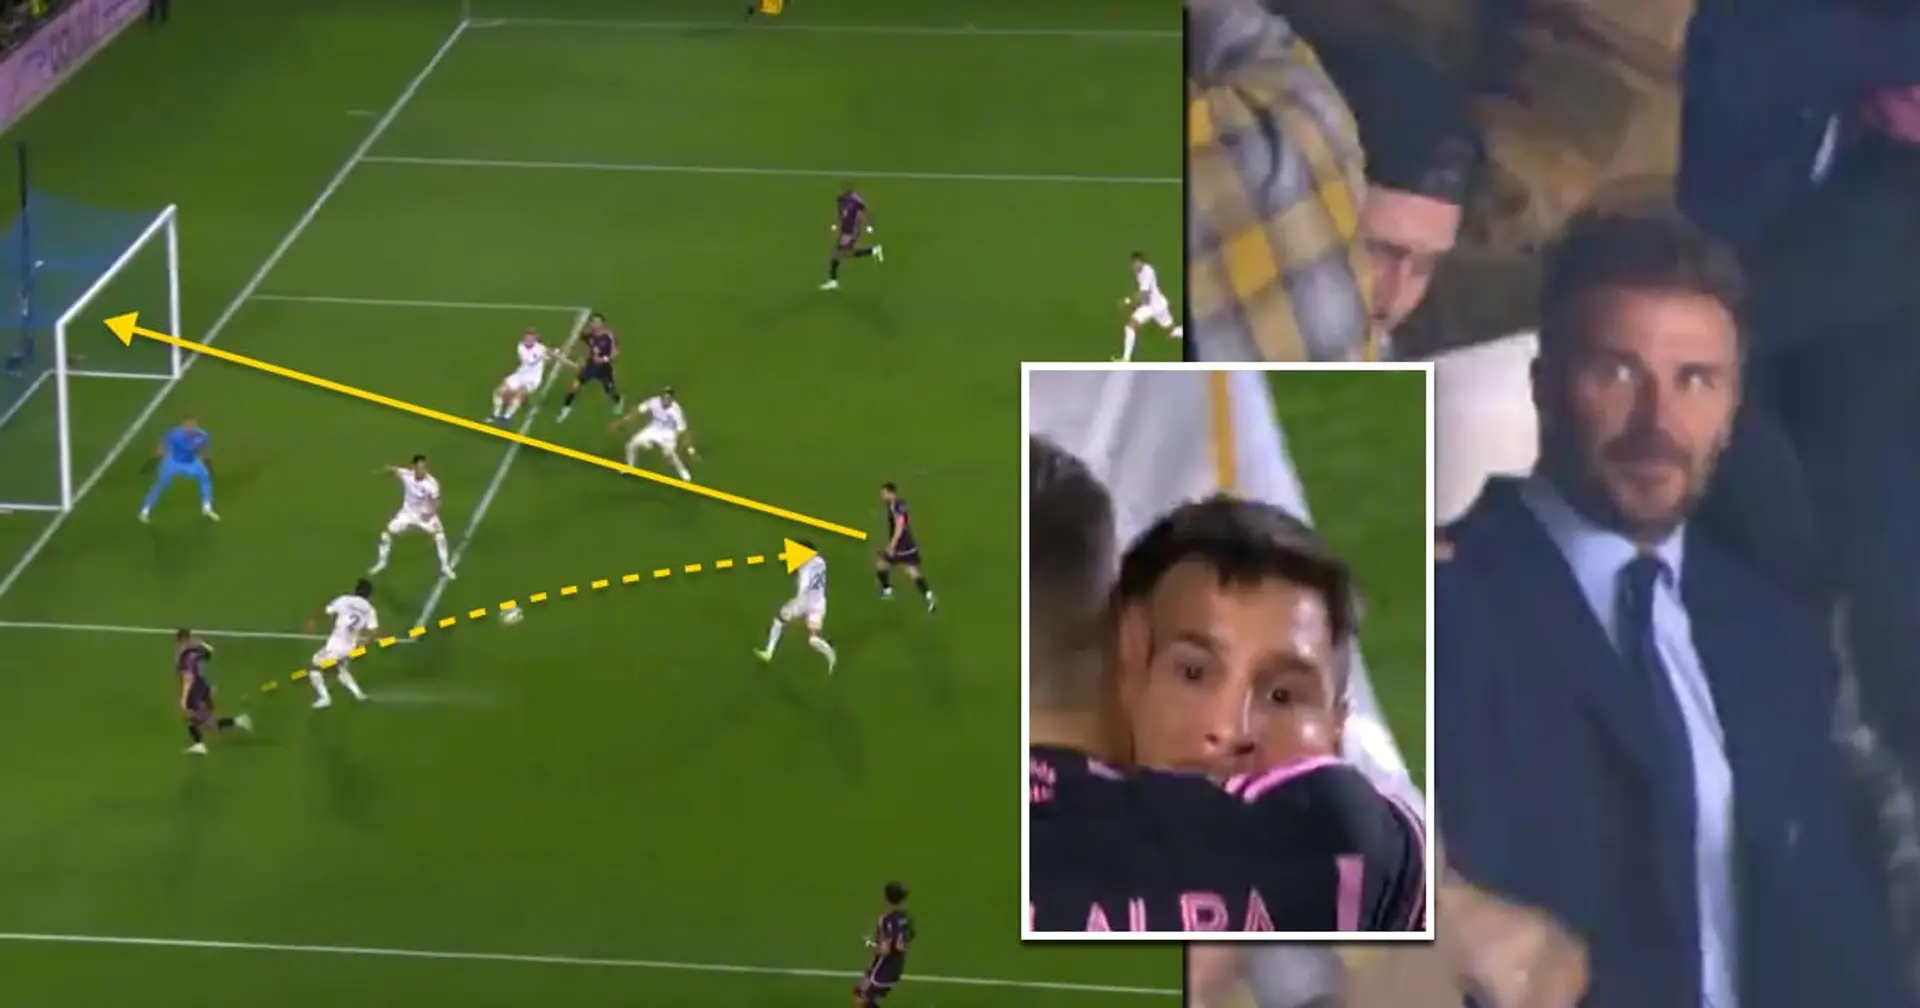 Messi marque son premier but dans la nouvelle saison MLS – vous savez déjà qui a fait la passe dé à Leo